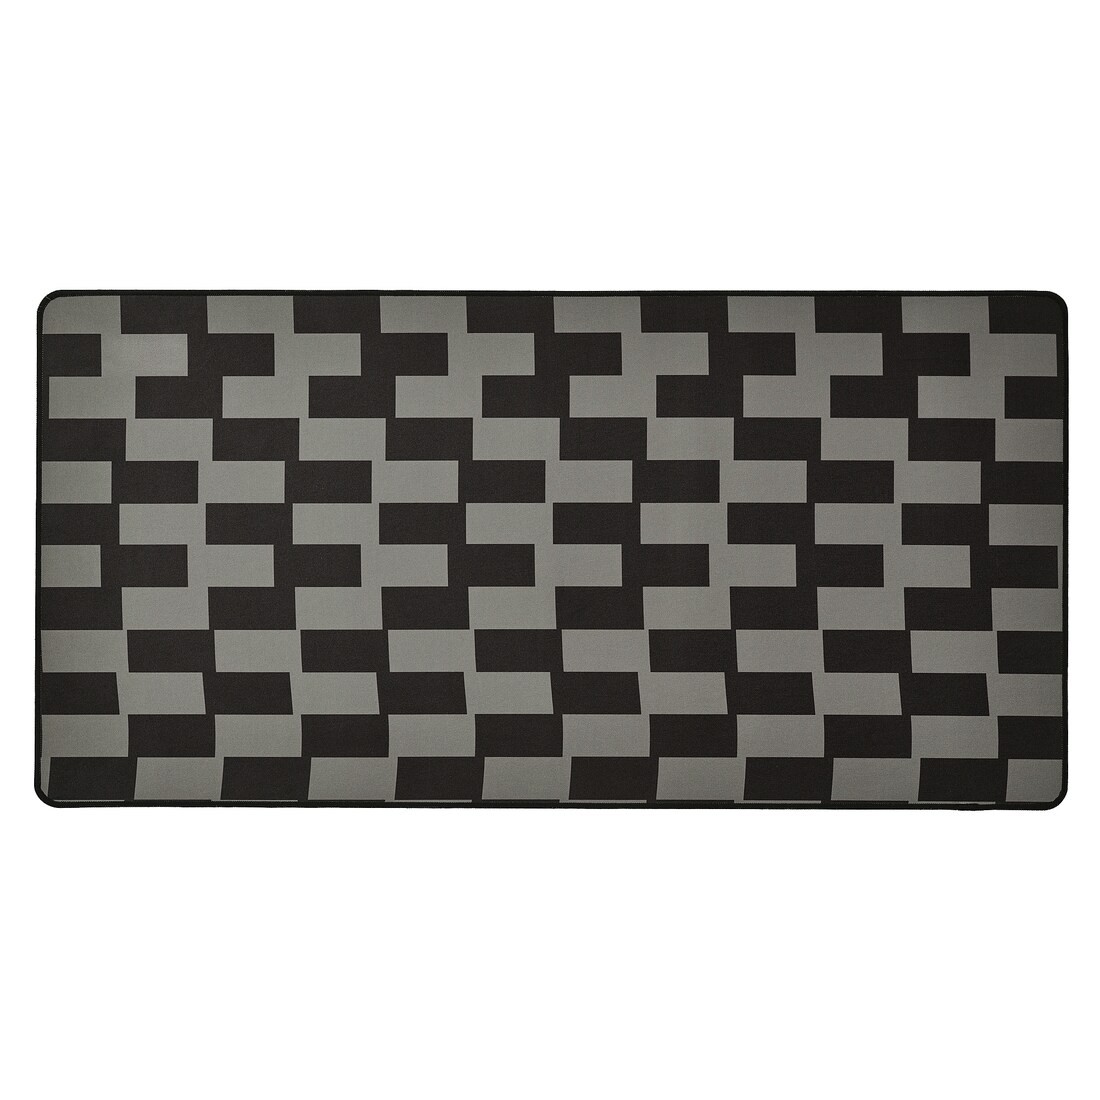 BLÅSKATA Игровой коврик для мыши, черный / серый узор, 40x80 см